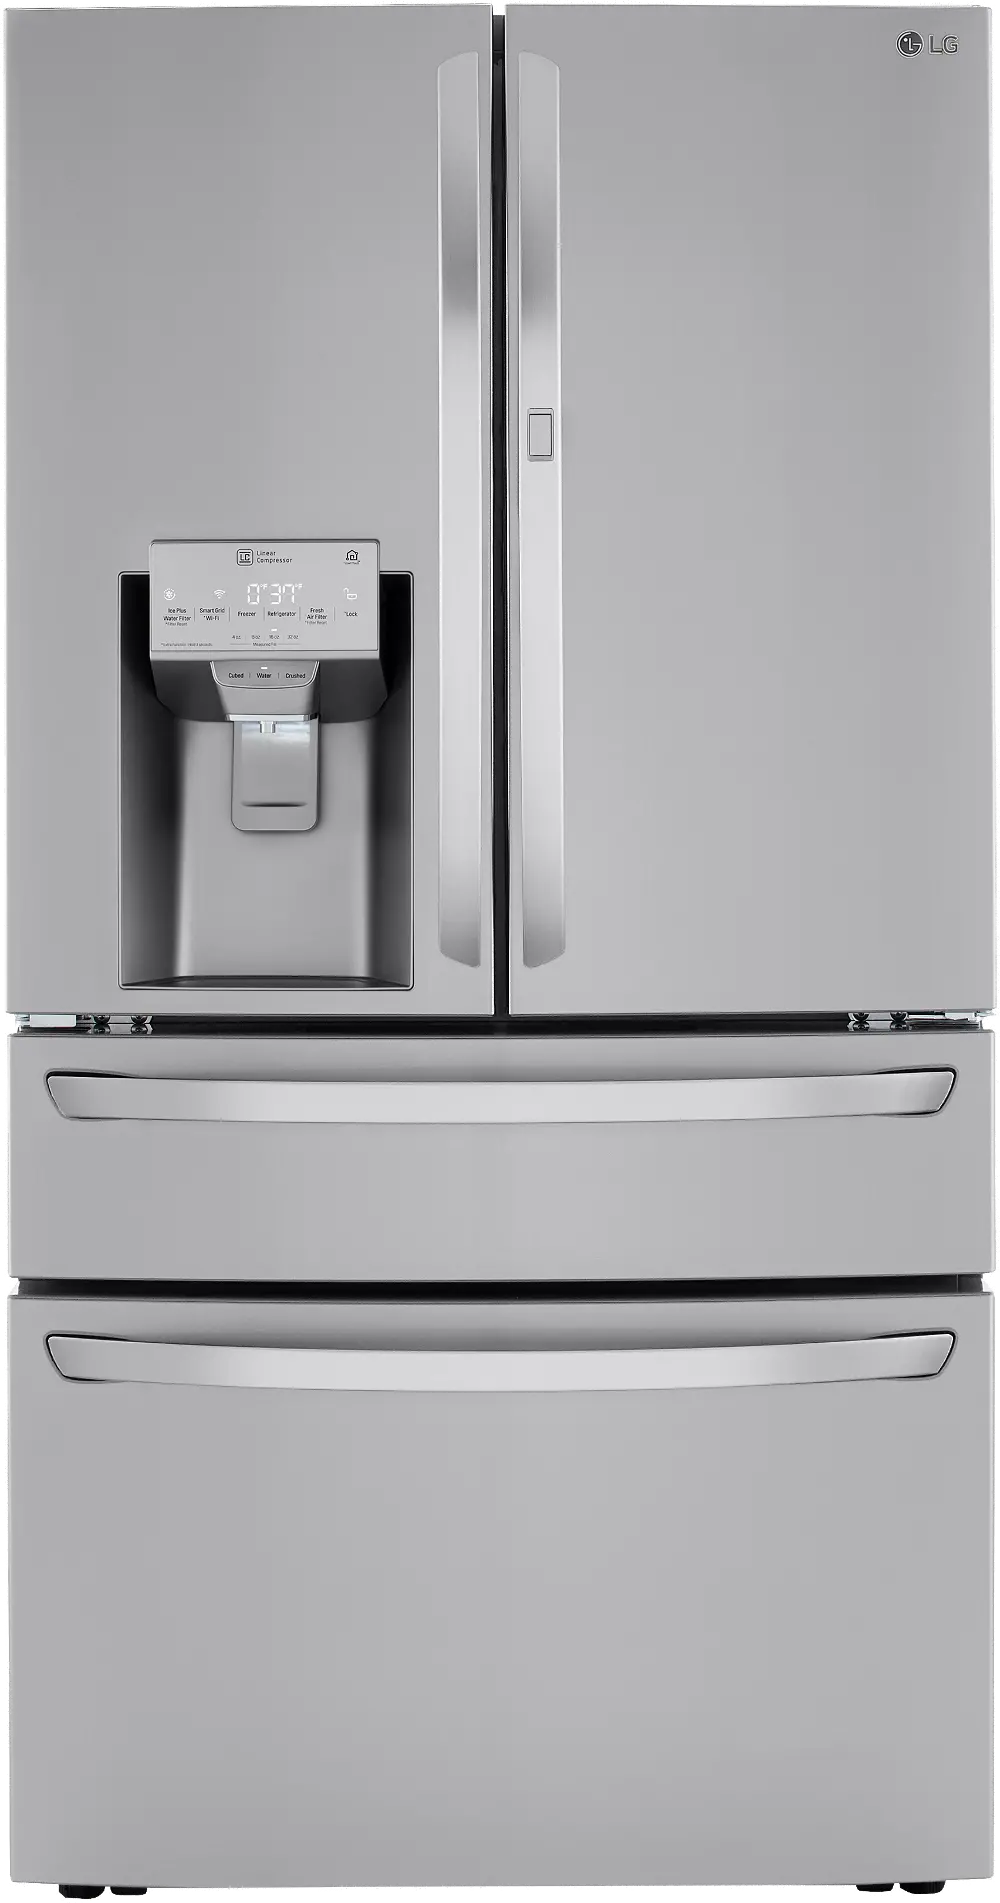 LRMDC2306S LG 22.5 cu ft French Door in Door Refrigerator - Counter Depth Stainless Steel-1